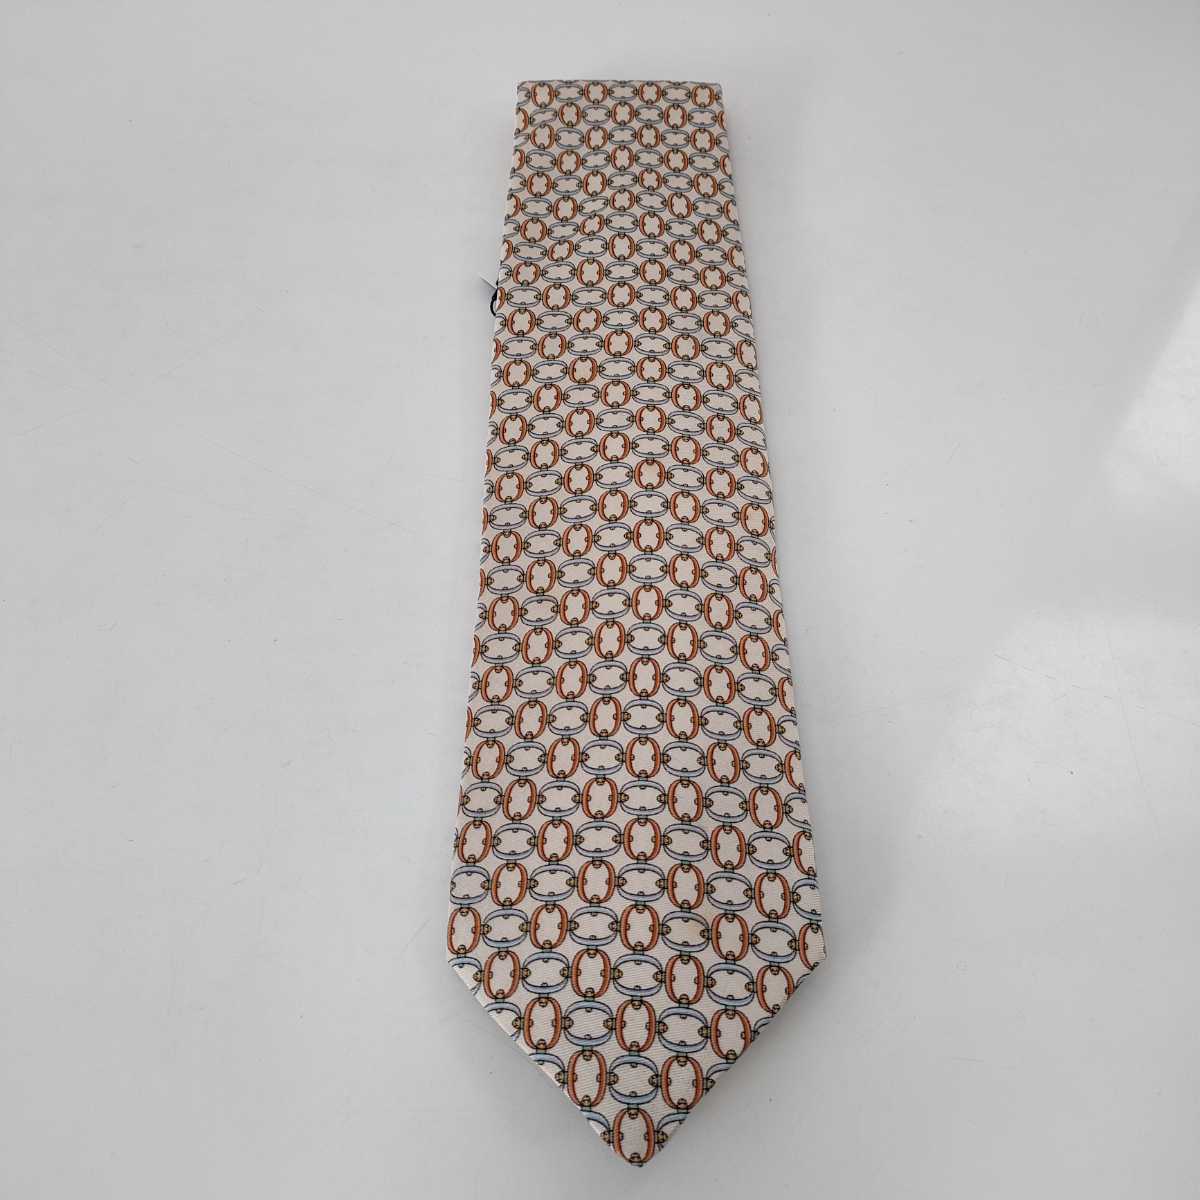  Dunhill (Dunhill) бежевый круг дизайн галстук новый товар не использовался с биркой с коробкой 